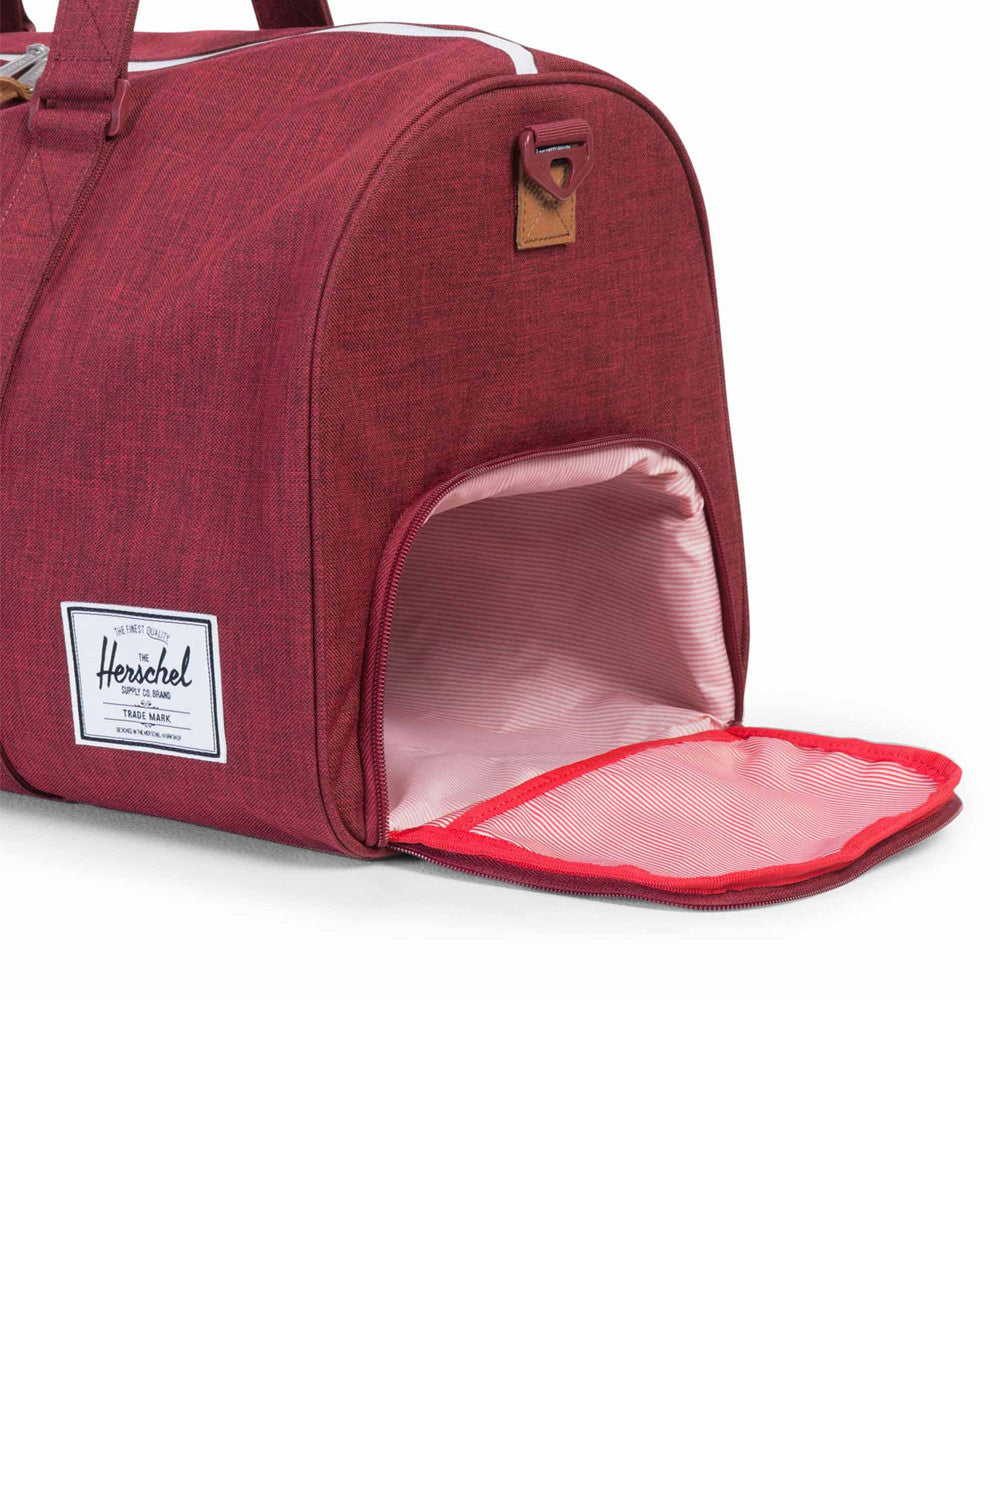 St. Louis Cardinals Herschel Supply Co. Novel Duffle Bag - Red